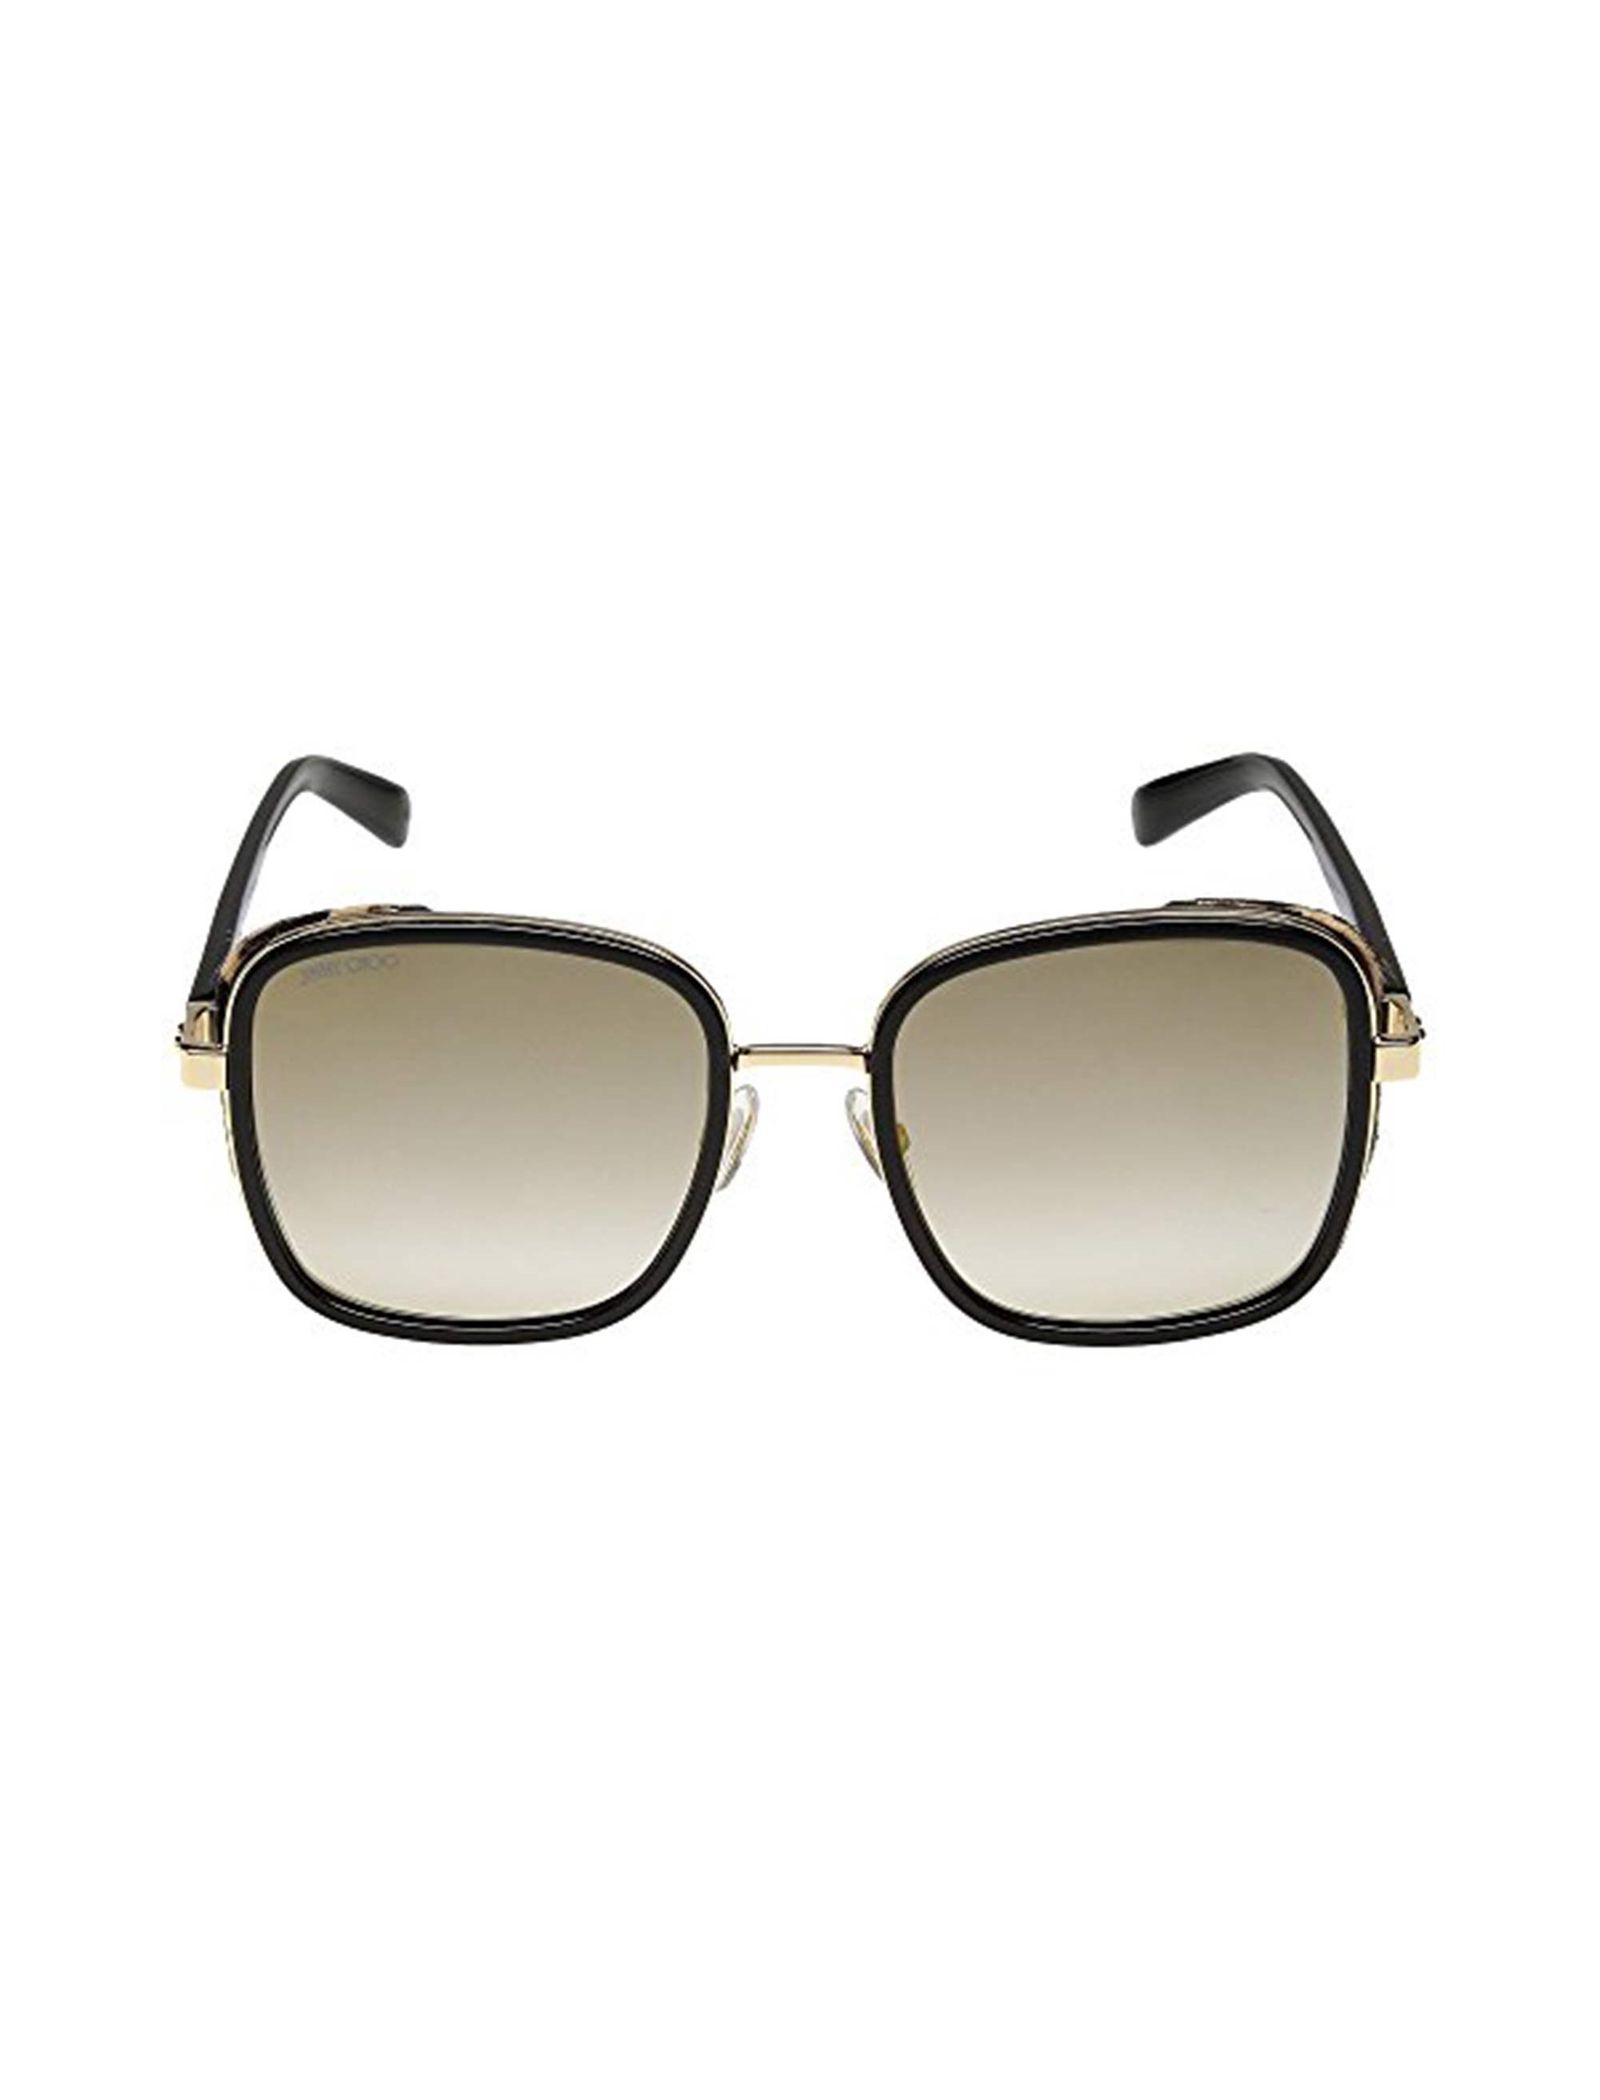 عینک آفتابی مربعی زنانه - جیمی چو - مشکي-طلايي - 2